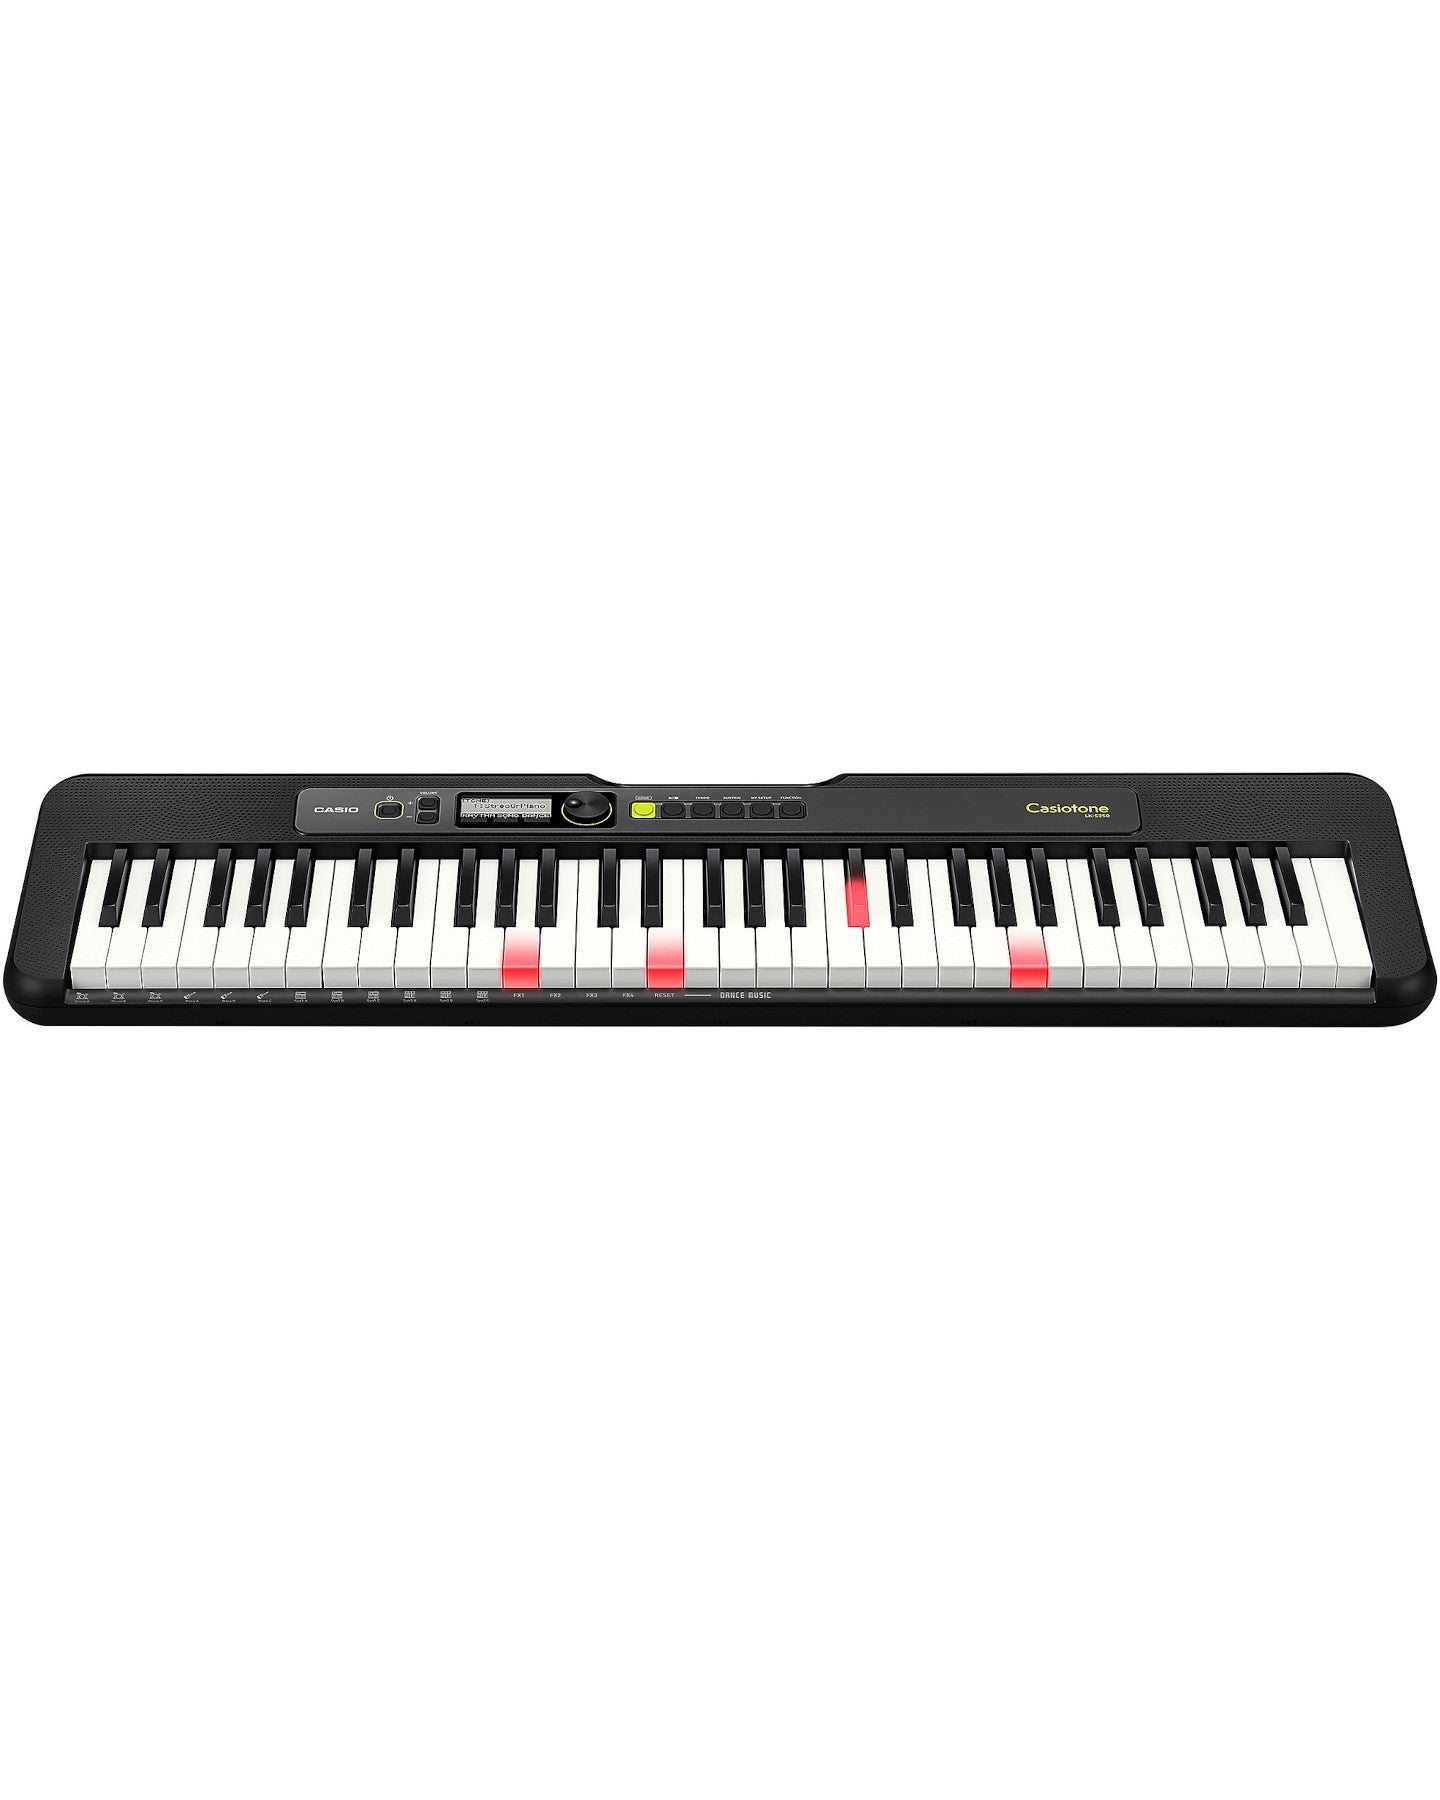 LKS250 Casiotone Portable Keyboard, 61 Key